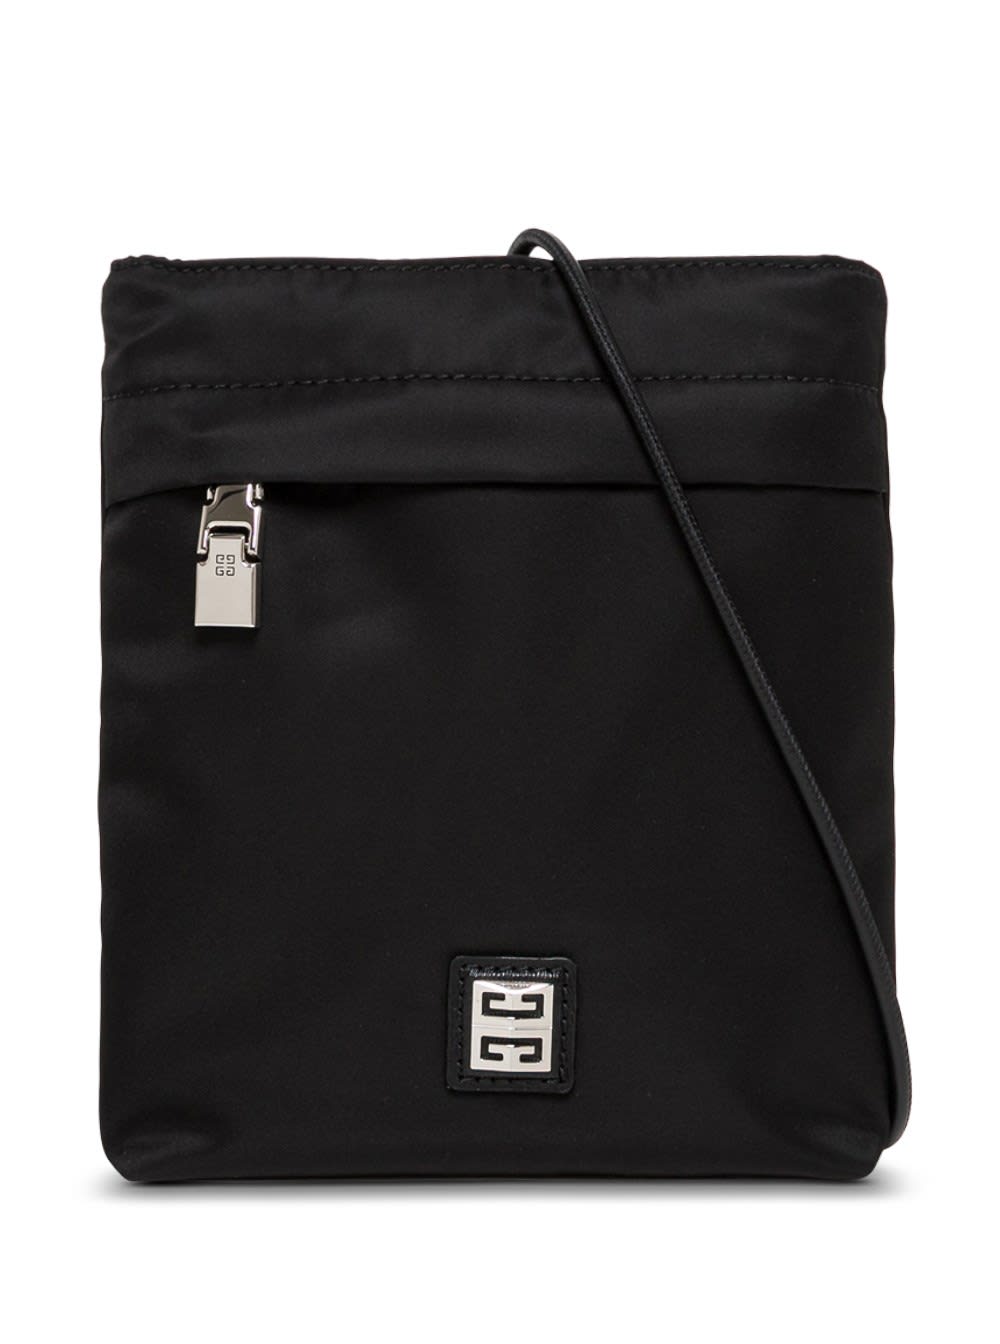 Givenchy Black Nylon Crossbody Bag With Logo